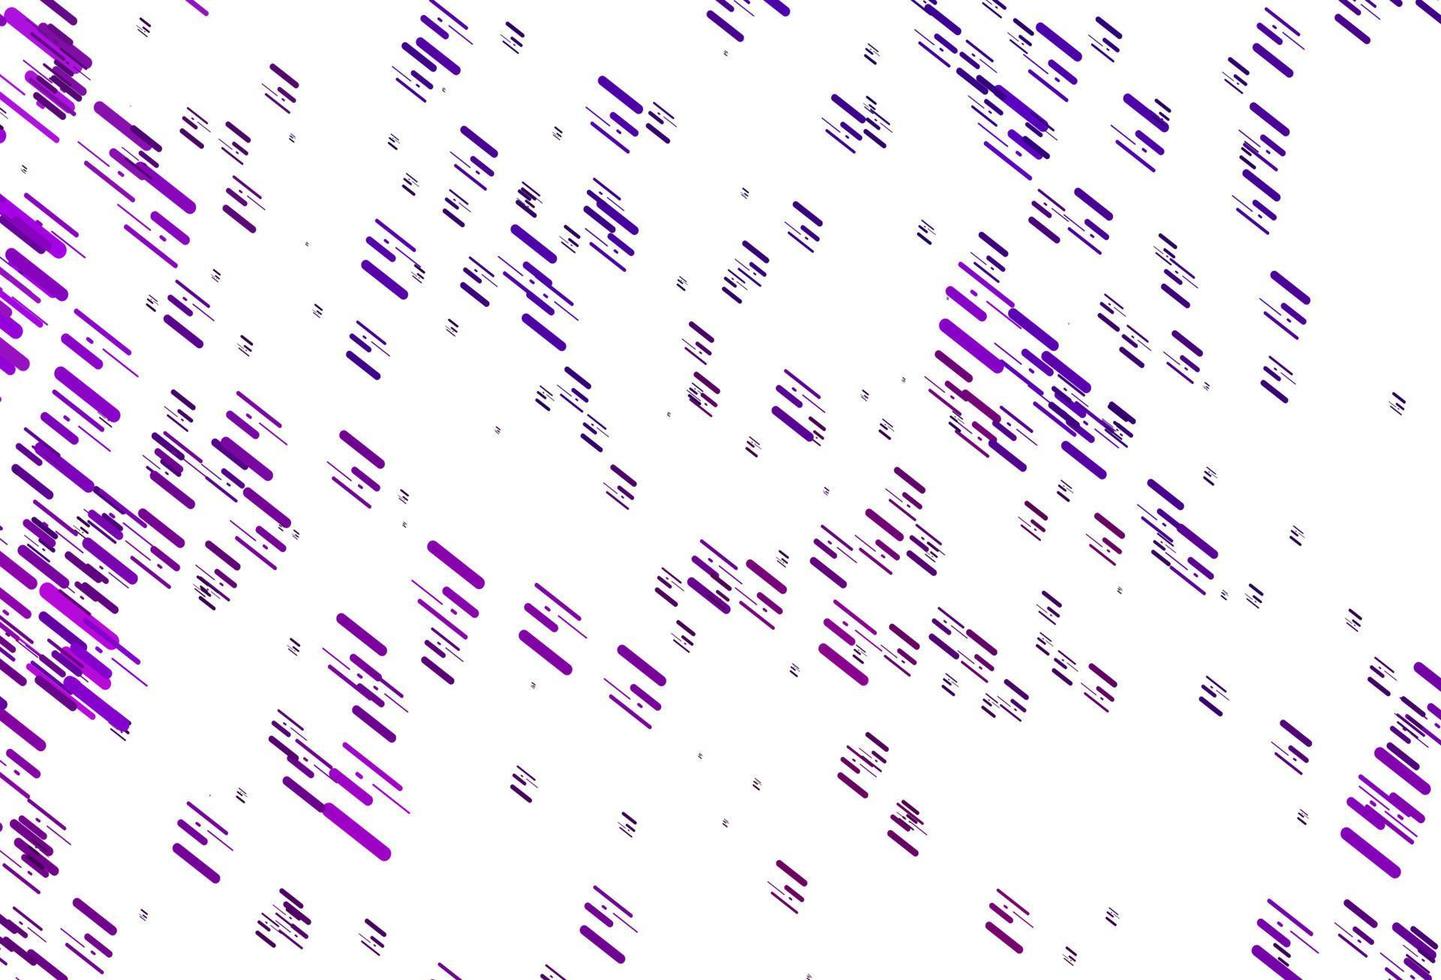 disposition vectorielle violet clair avec des lignes plates. vecteur